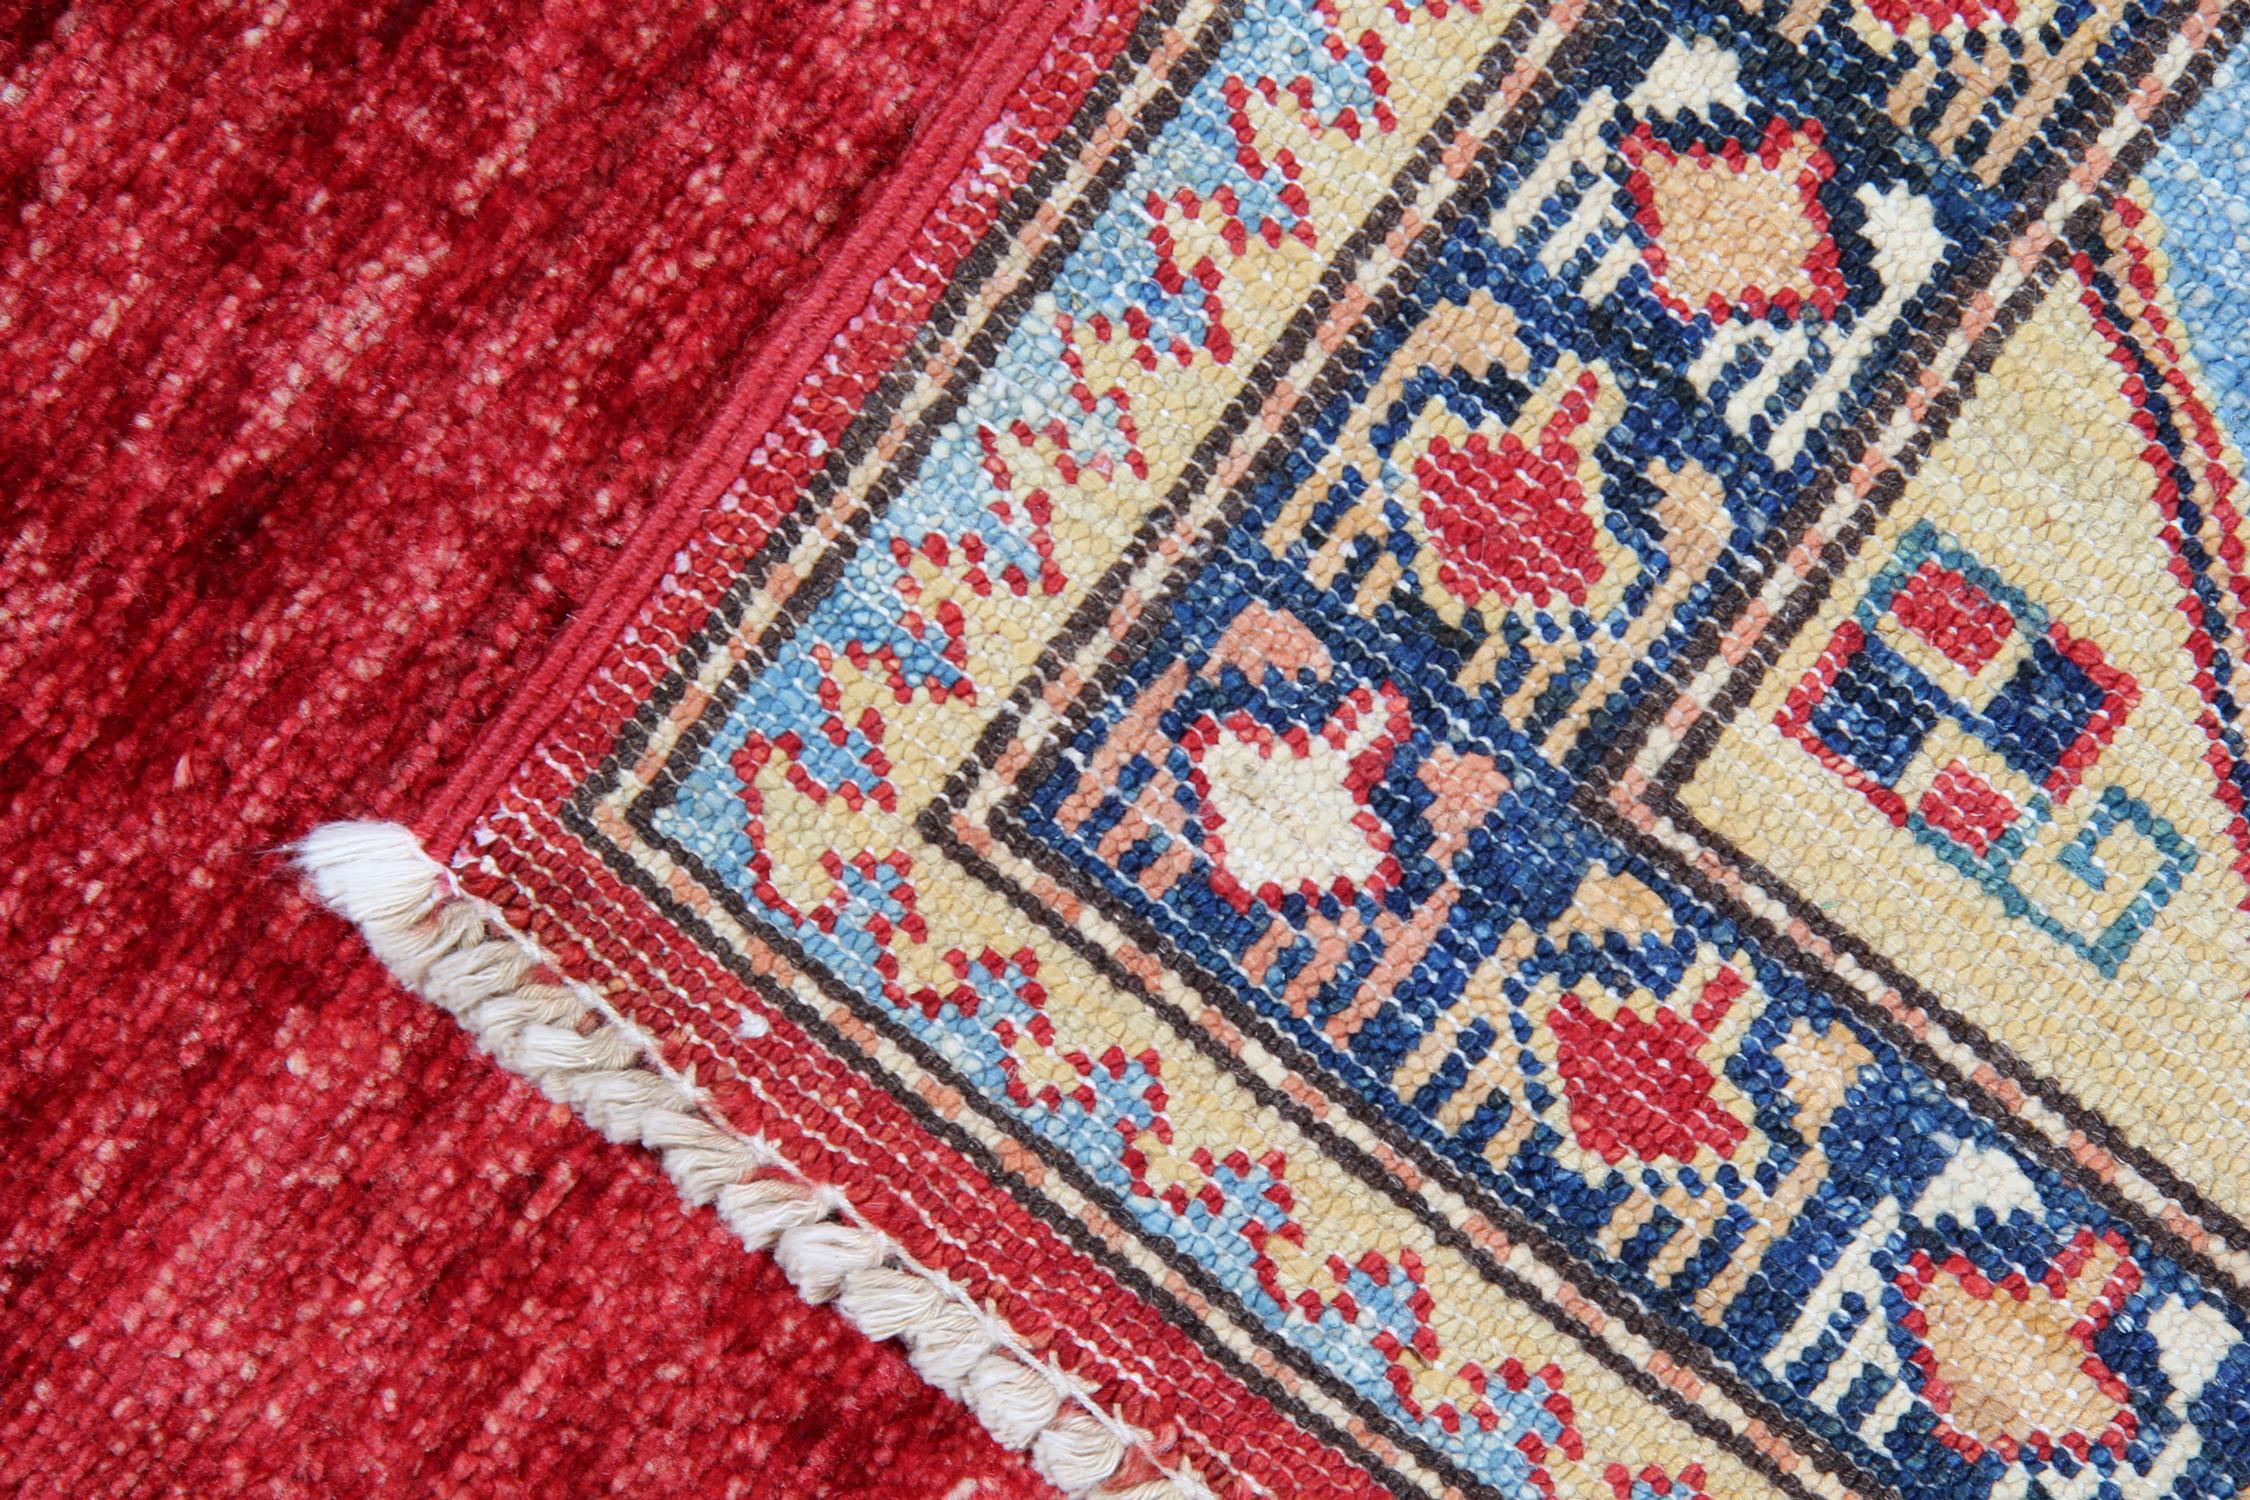 Kazak Handmade Geometric Rug, Red Carpet Modern Livingroom Rug For Sale